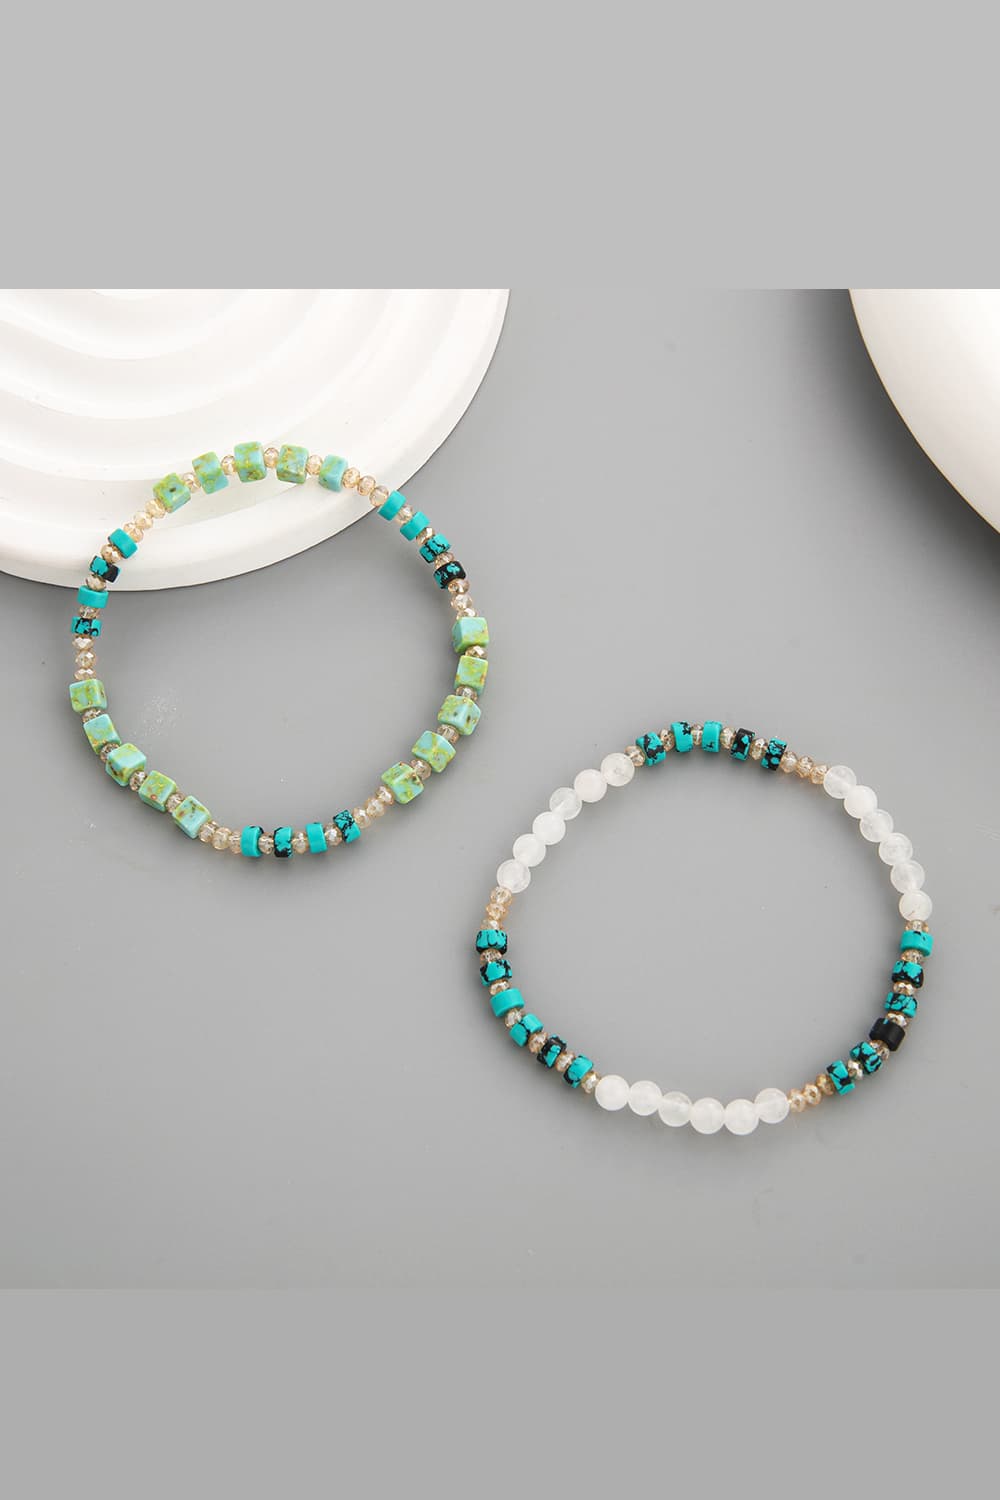 Crystal & Natural Stone Bracelet - Women’s Jewelry - Bracelets - 6 - 2024